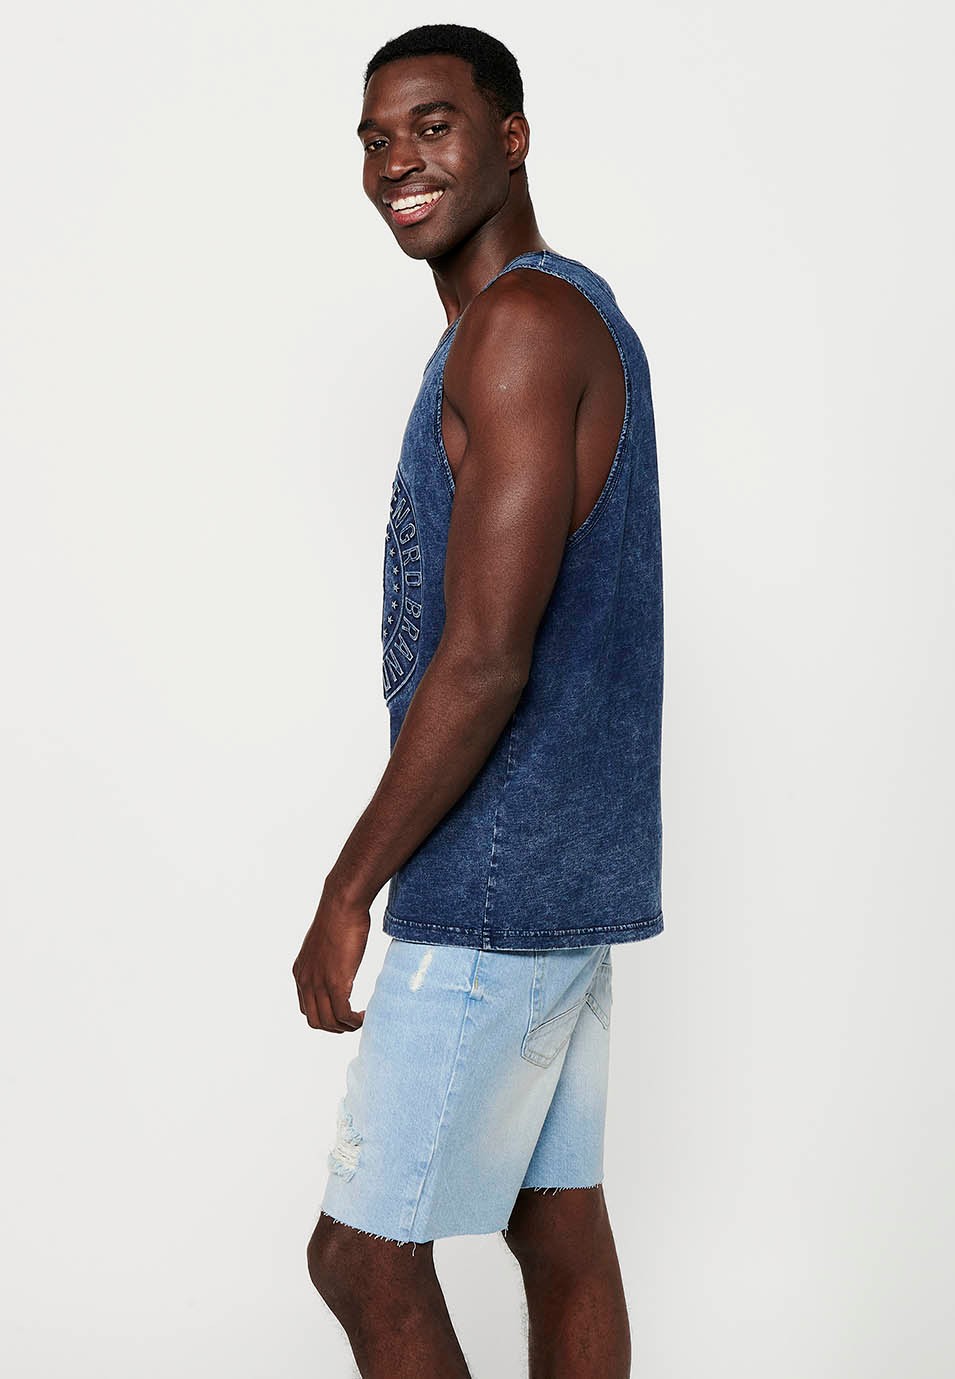 Camiseta sin mangas con efecto desgastado, color azul para hombres